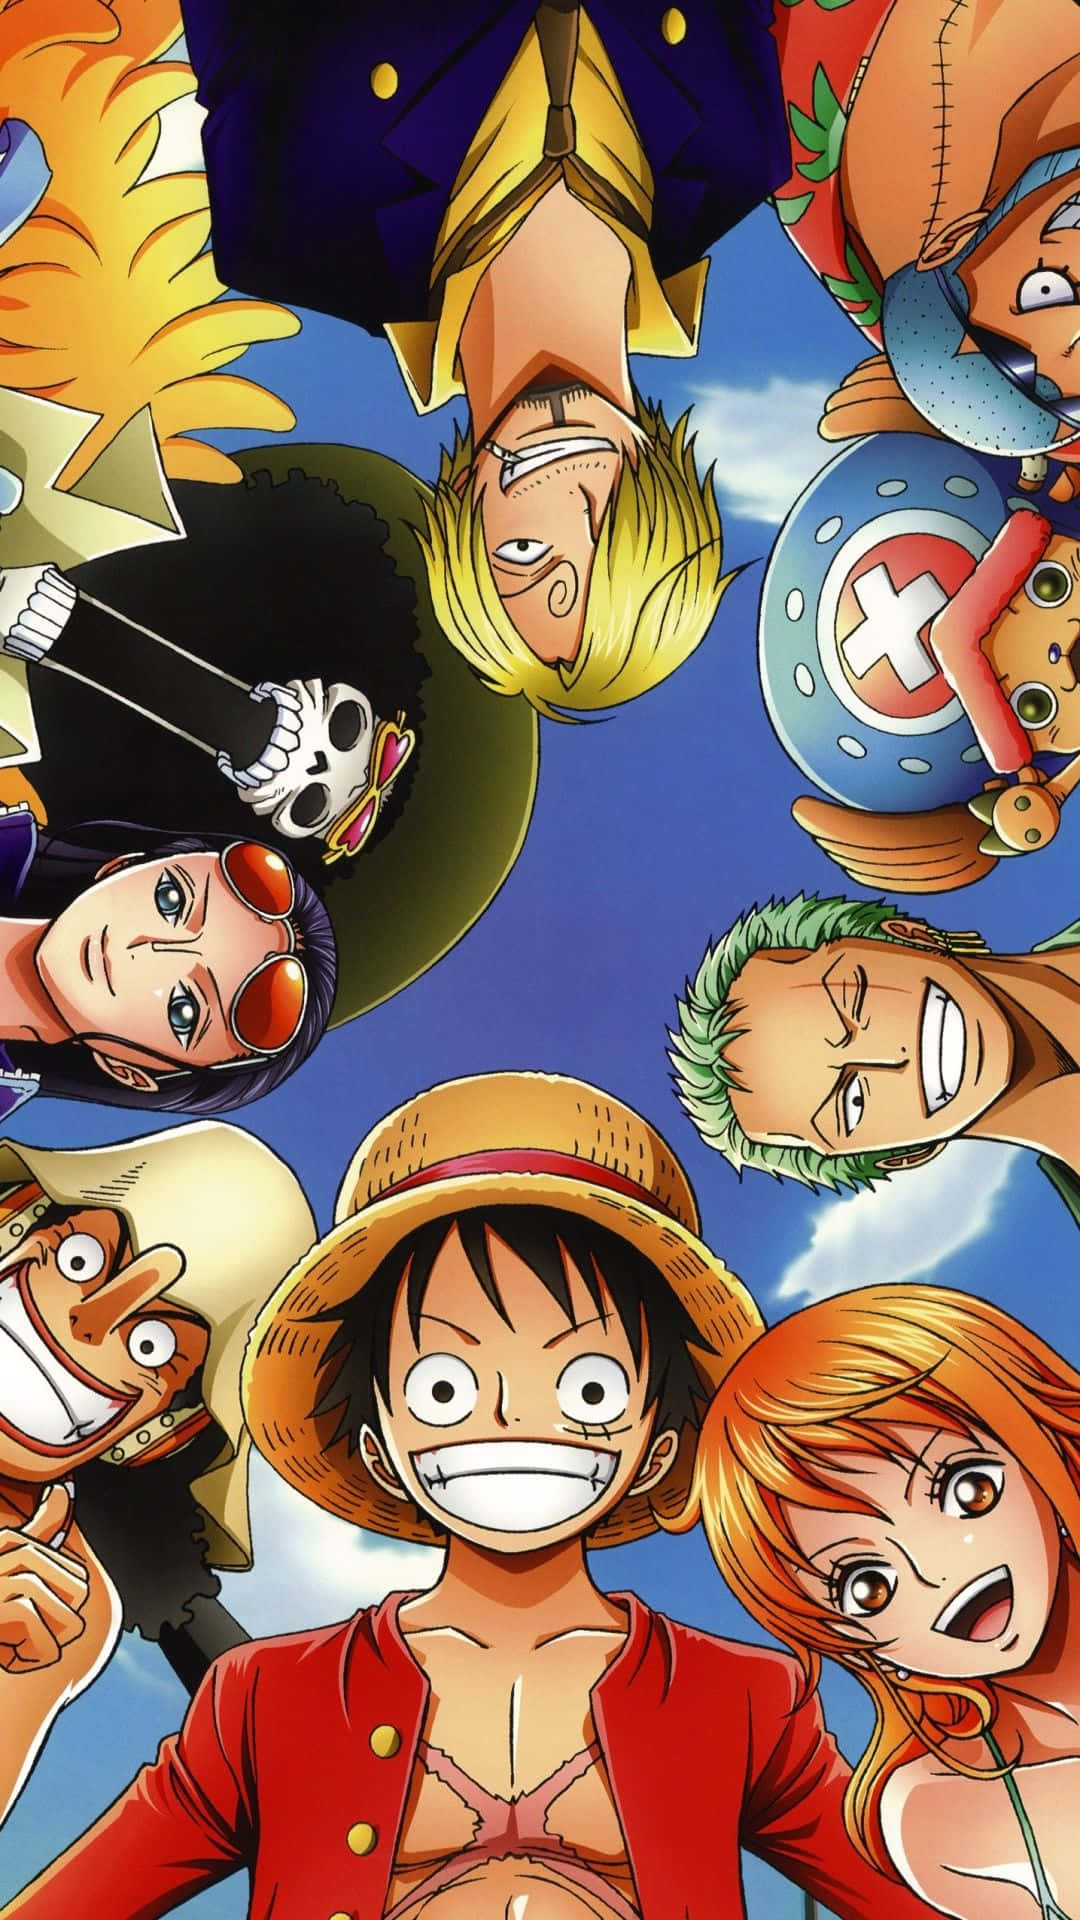 Imagemde Grupo Do One Piece